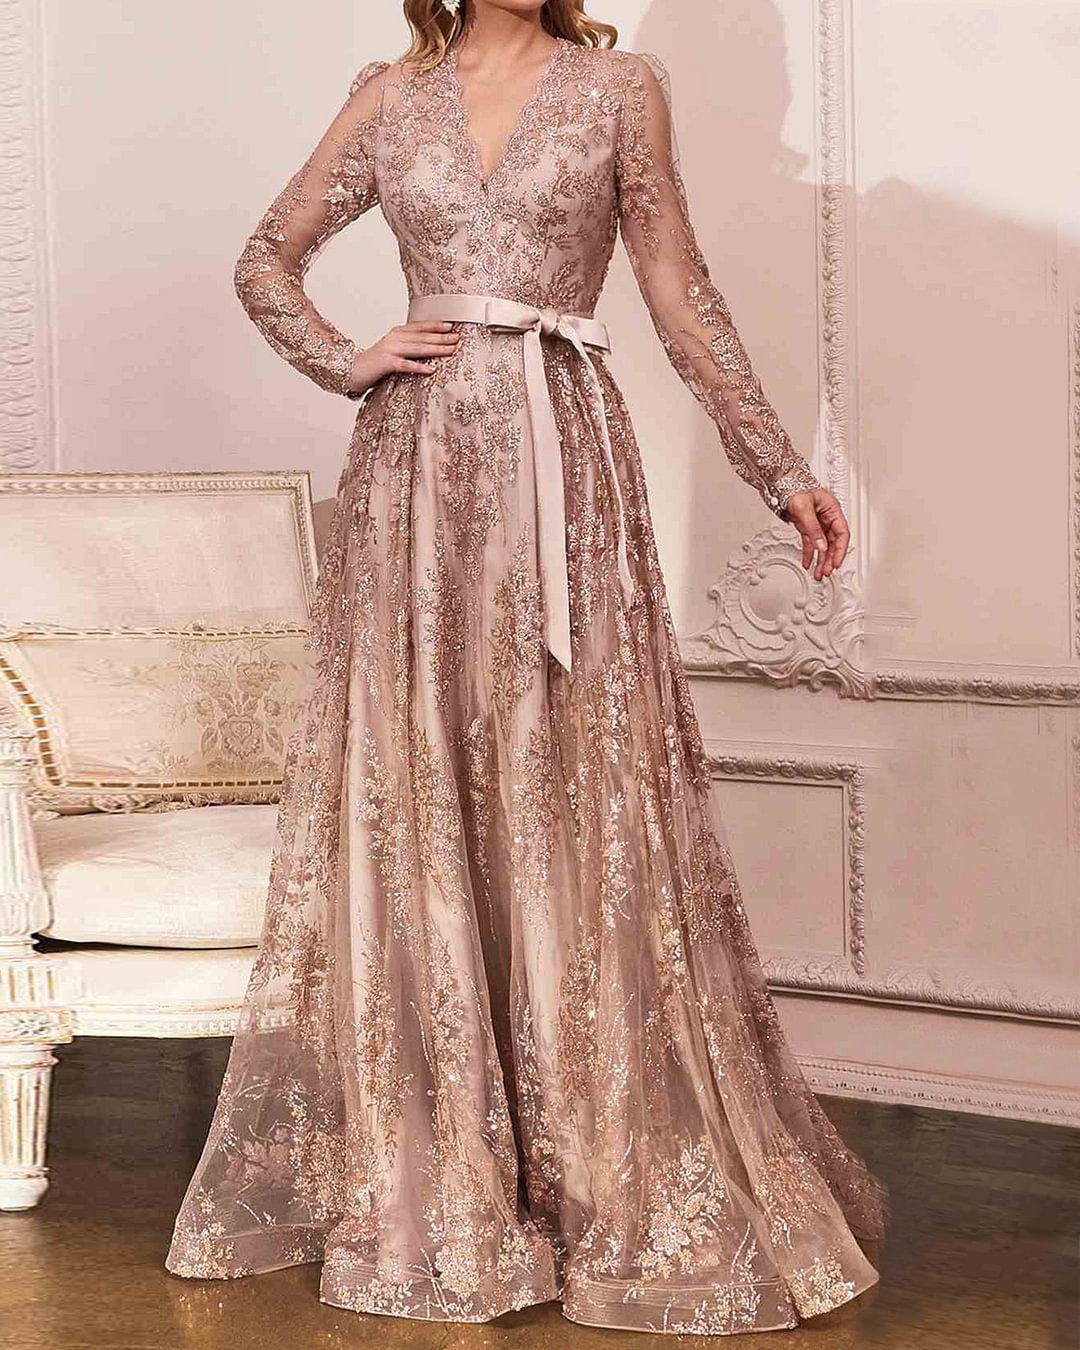 Goldene Eleganz: Festgebundenes Abendkleid zum Binden